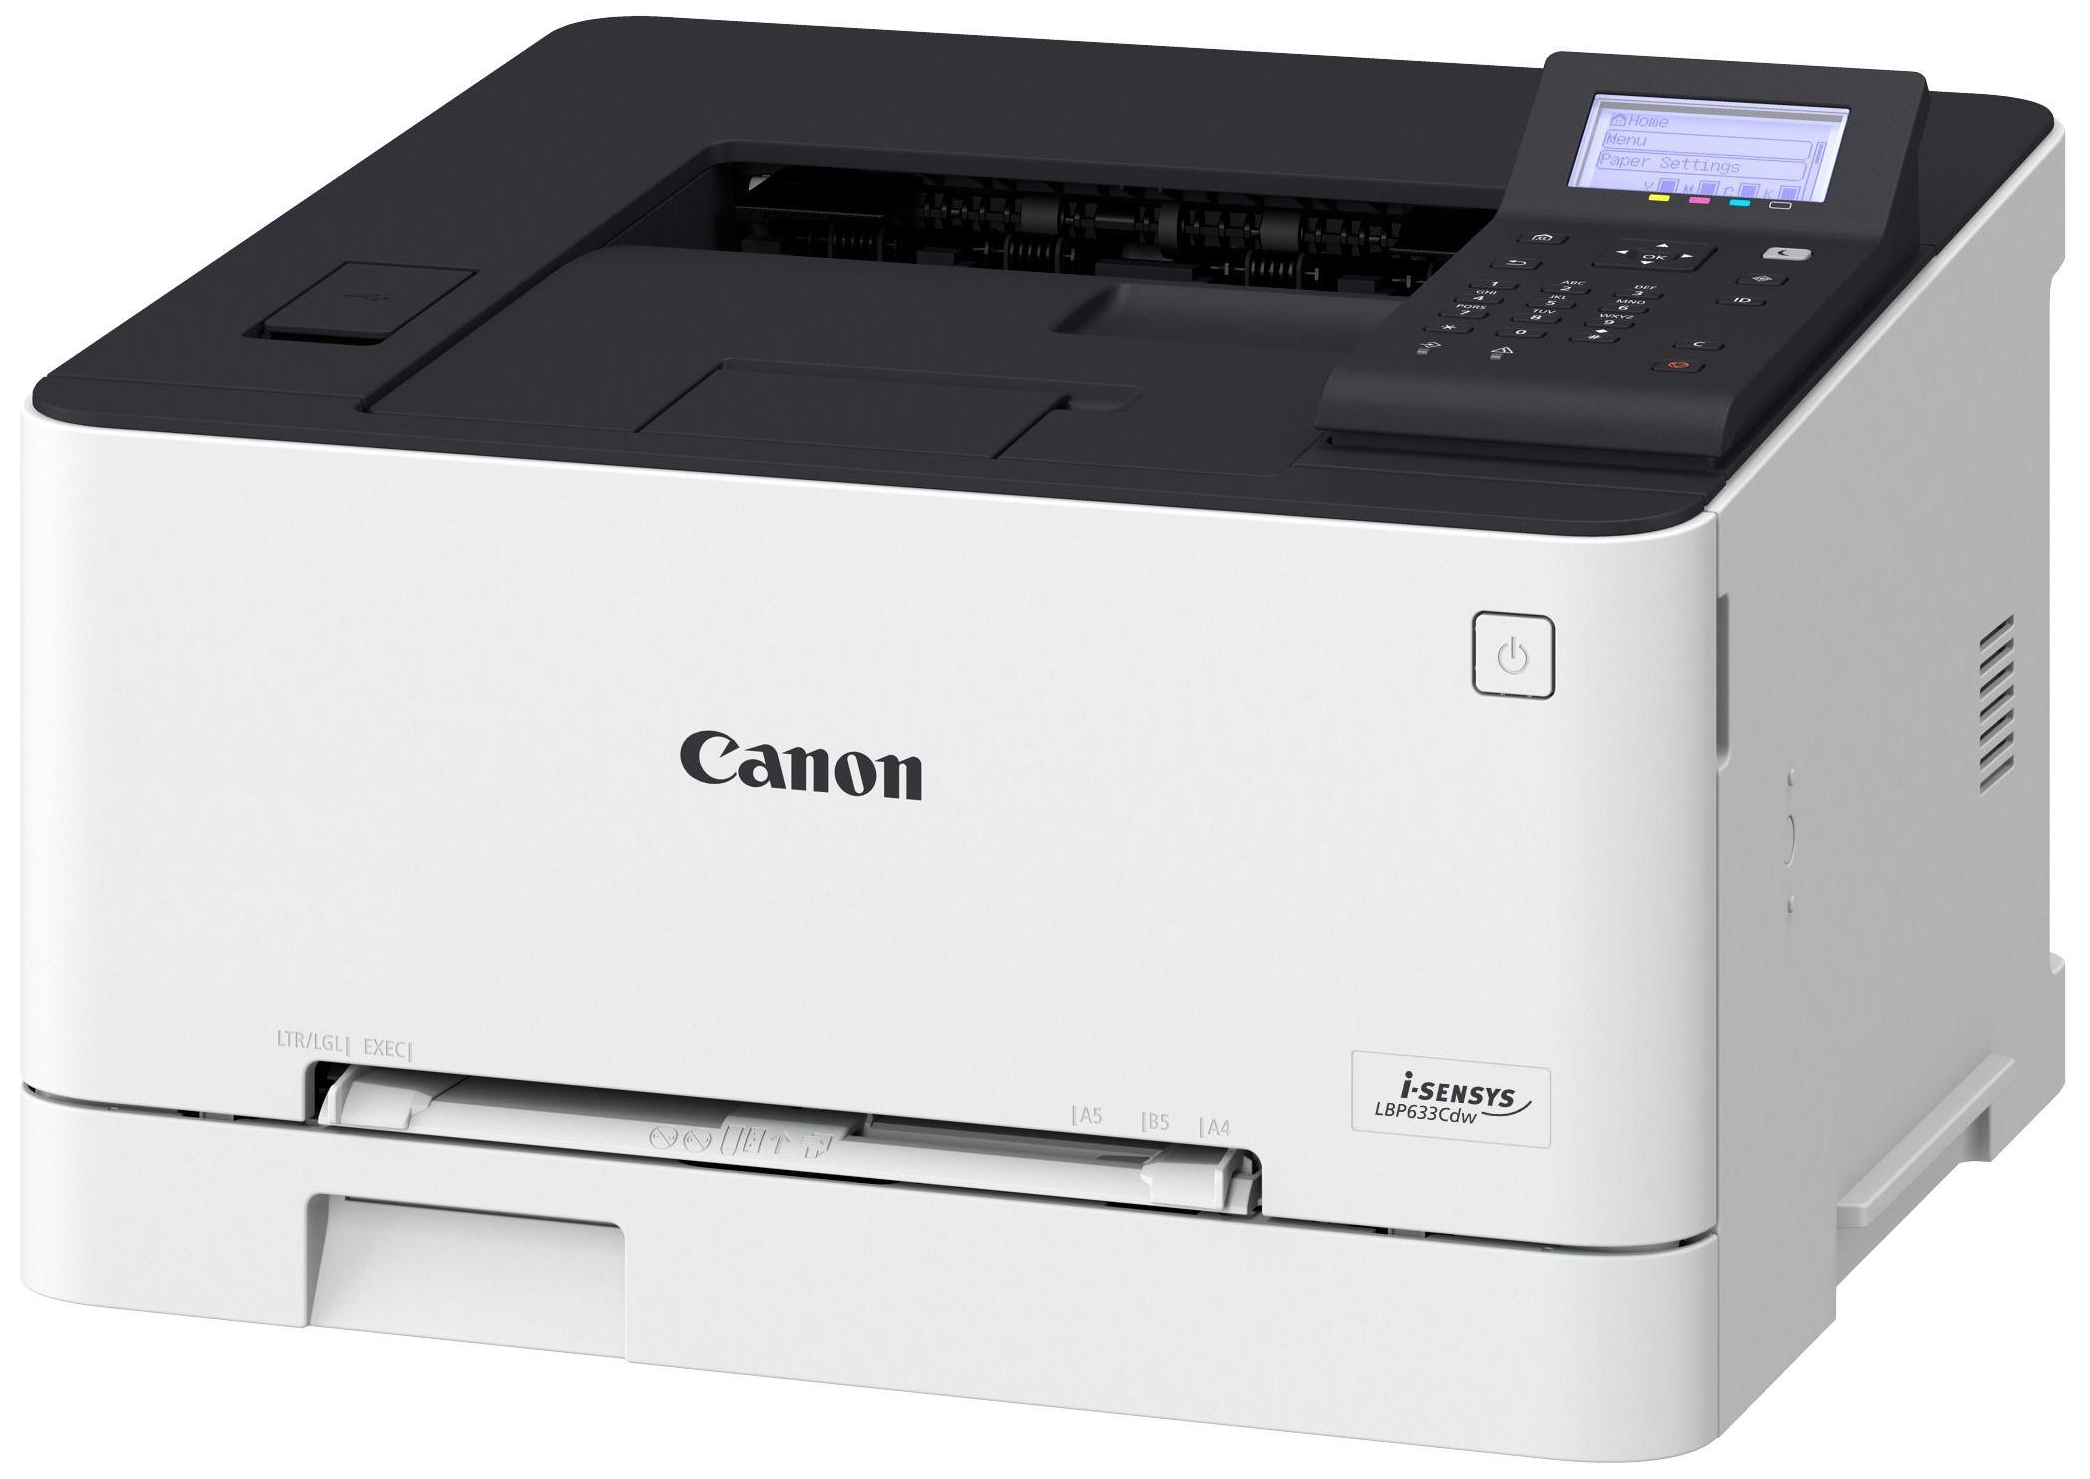 Лазерный принтер максимальное разрешение. Принтер Canon i-SENSYS lbp623cdw. Лазерный принтер Canon 623cdw. Canon i-SENSYS lbp621cw. Canon LBP 623.